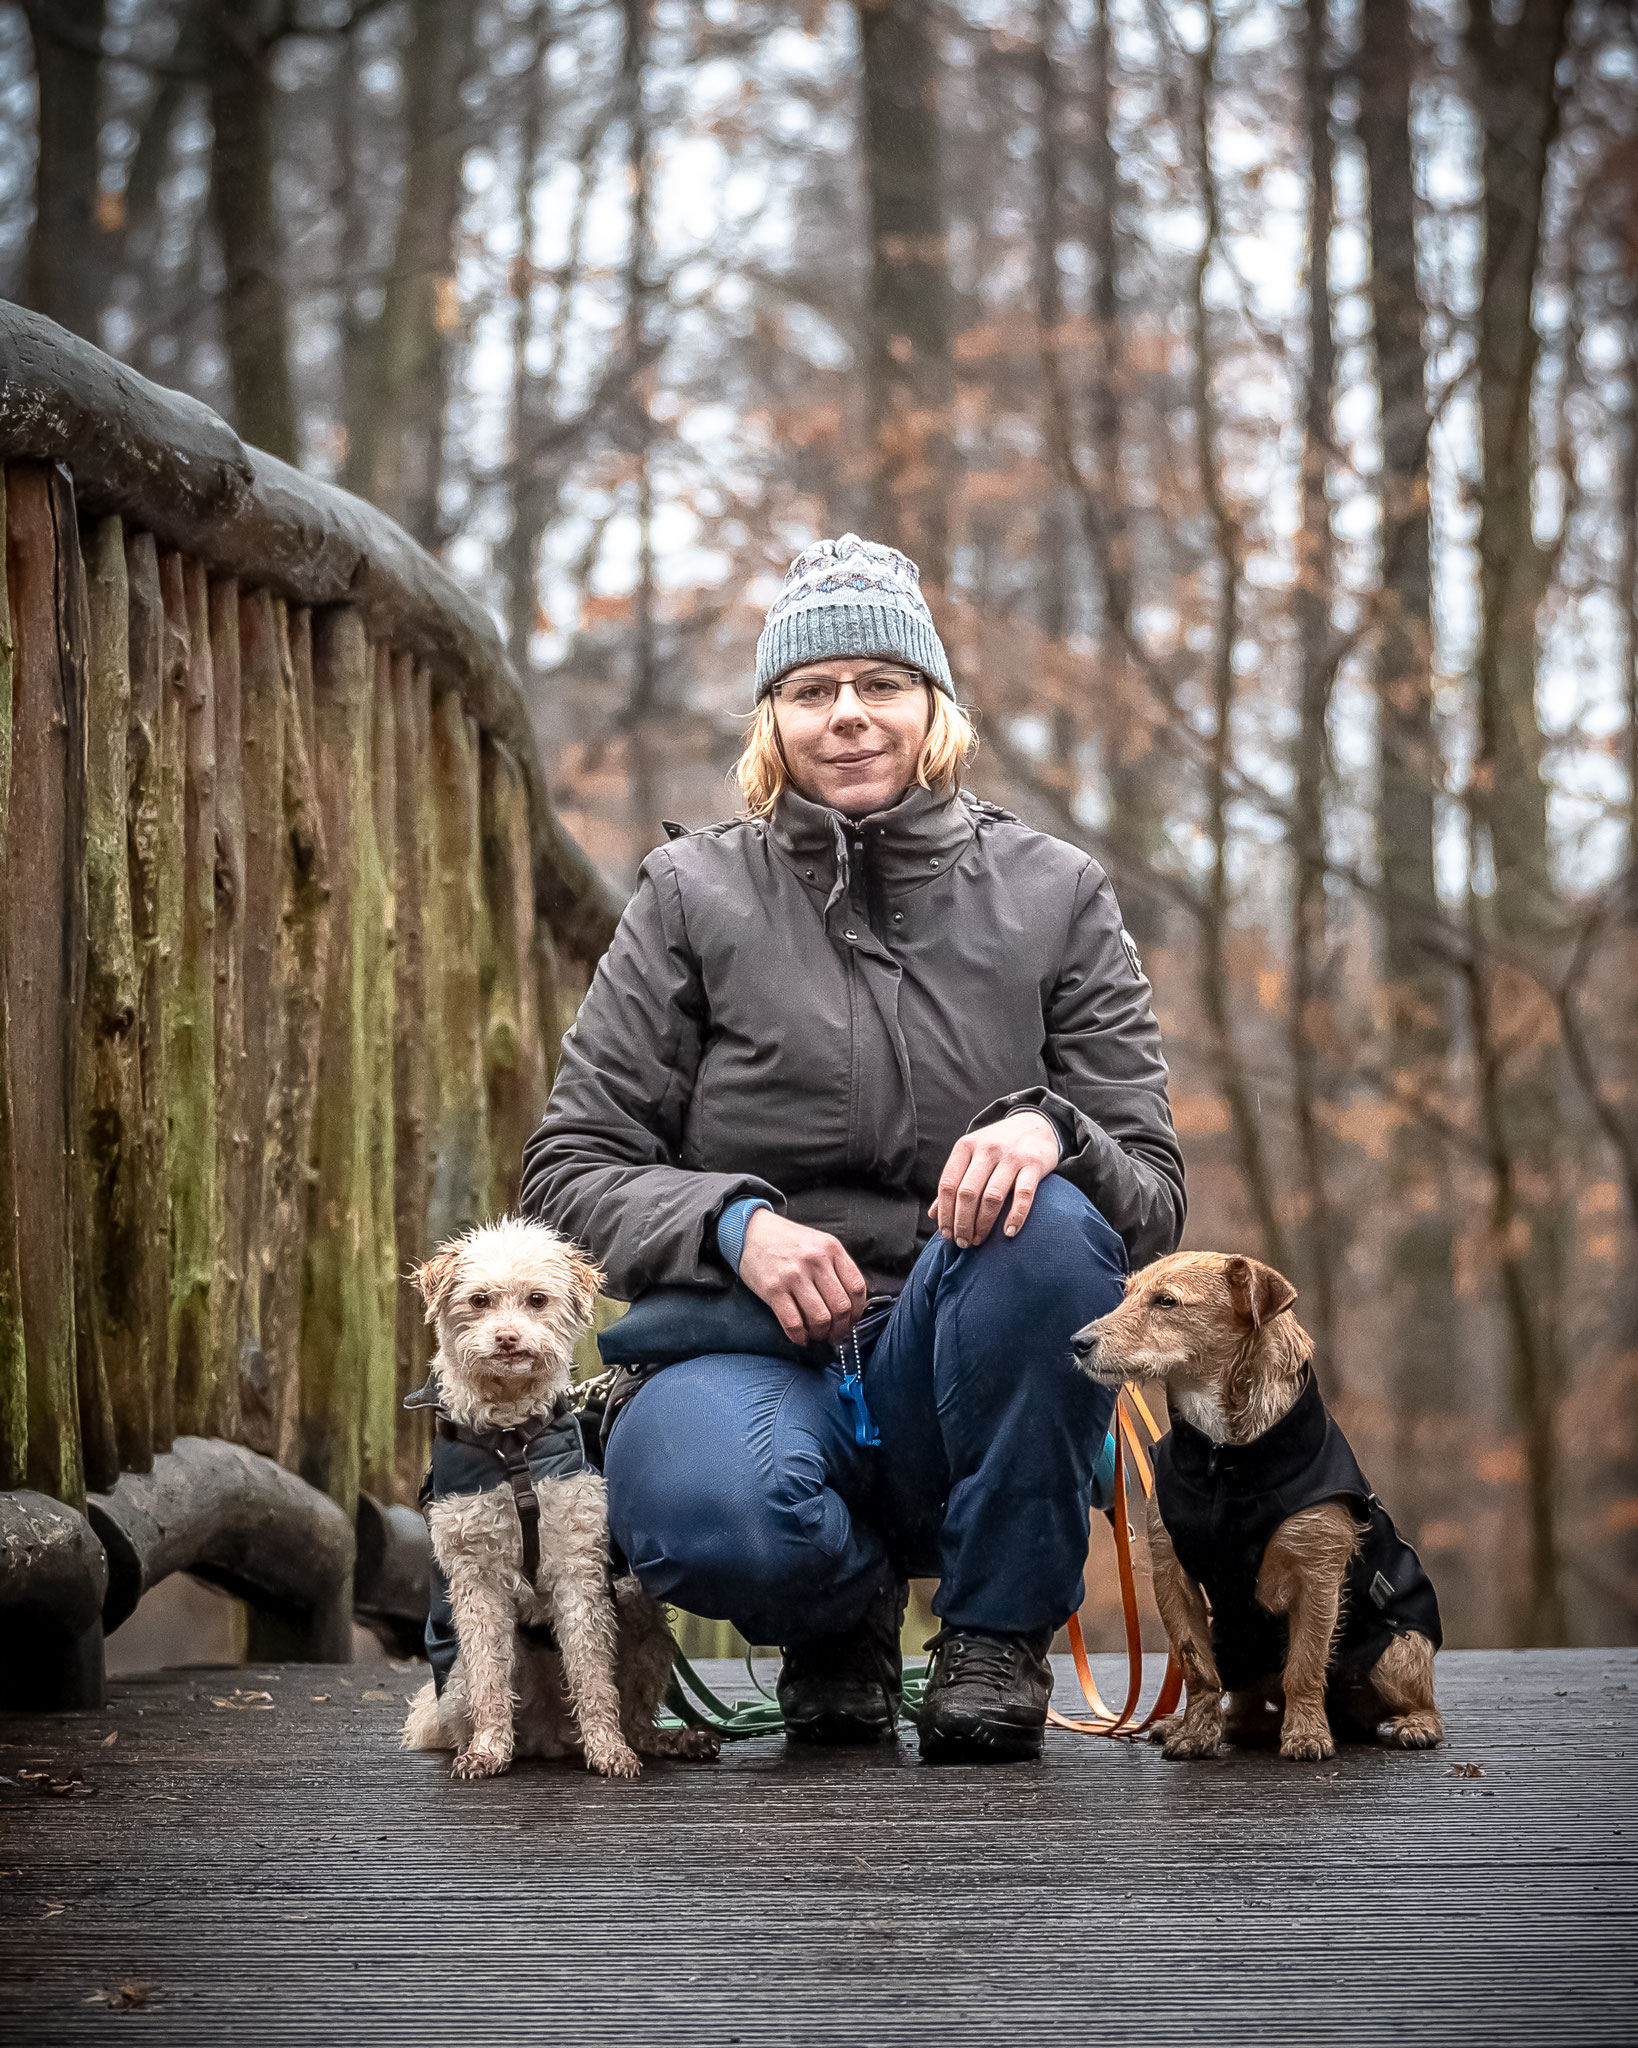 Rebecca geht täglich mit den Hunden in Hamburg Altona spazieren, die sie in ihrem Gassi Service betreut